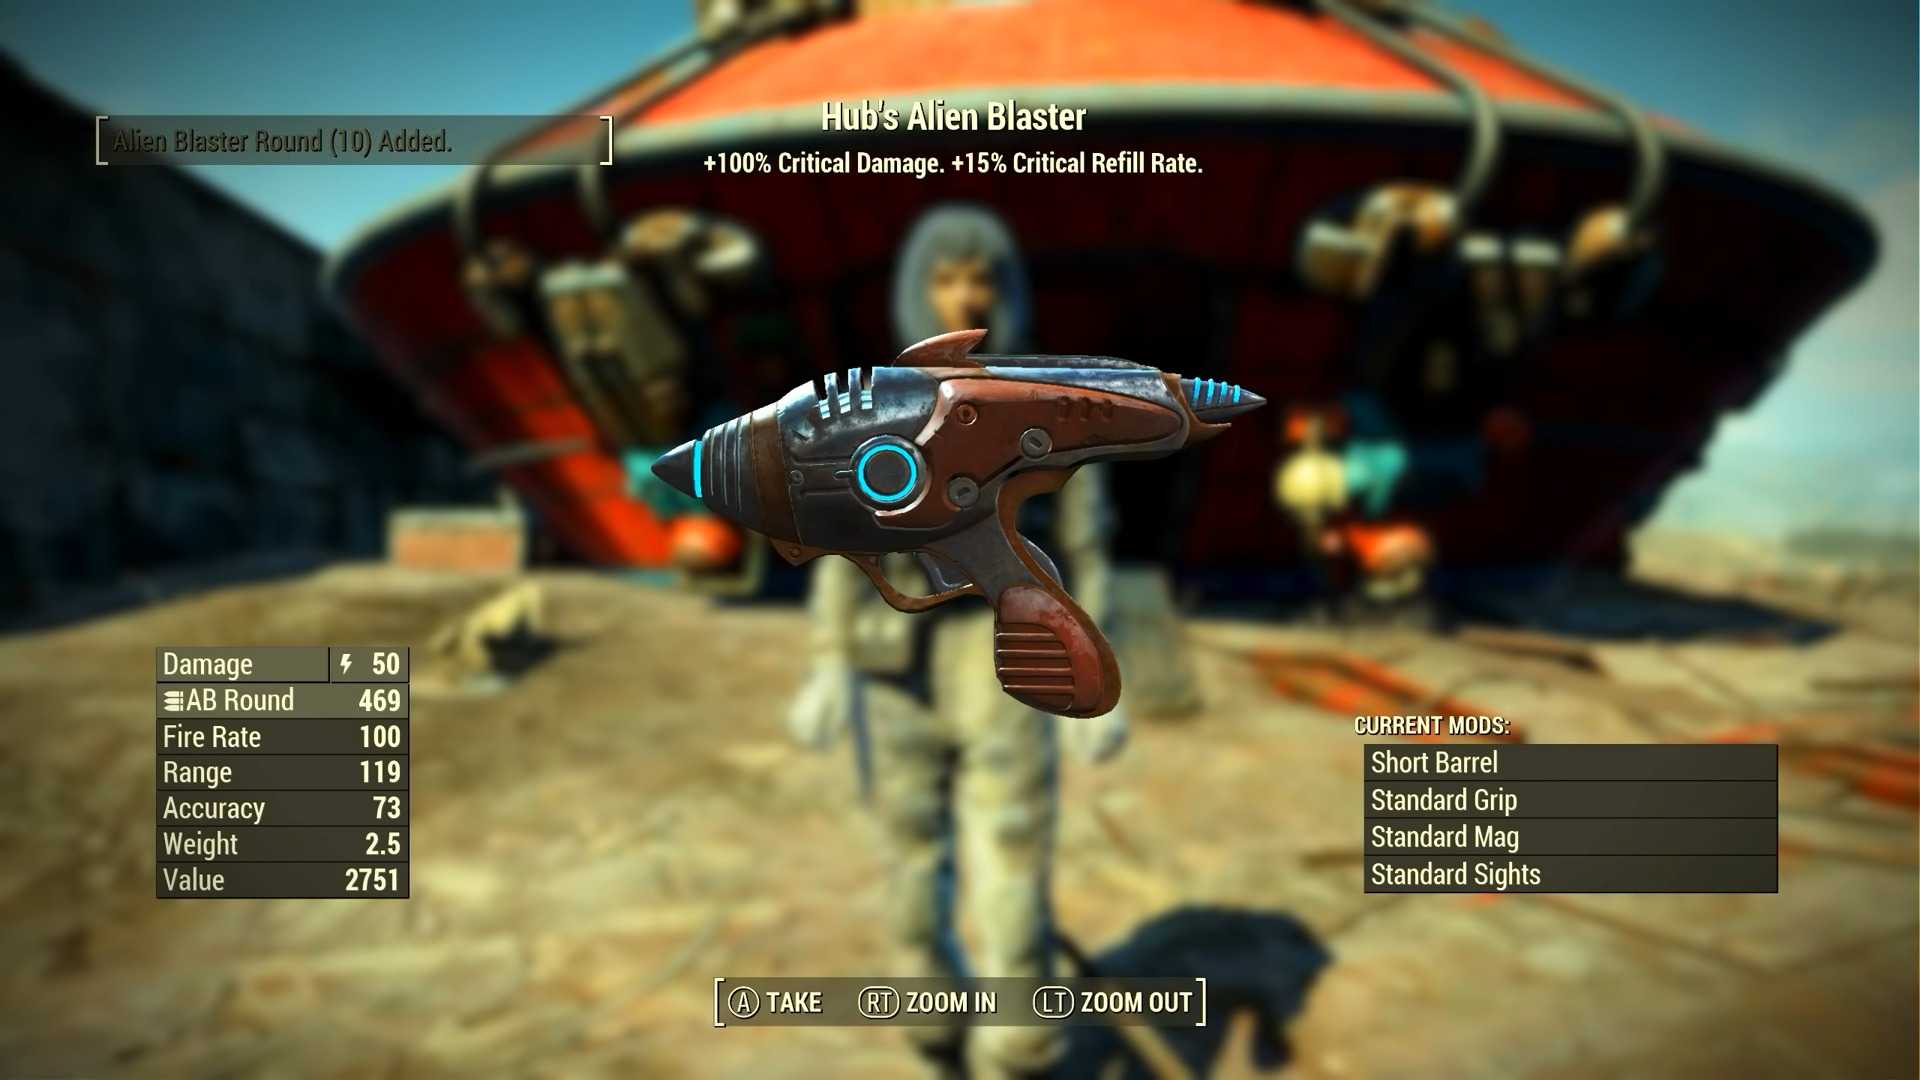 Hub's Alien Blaster pistol in Fallout 4